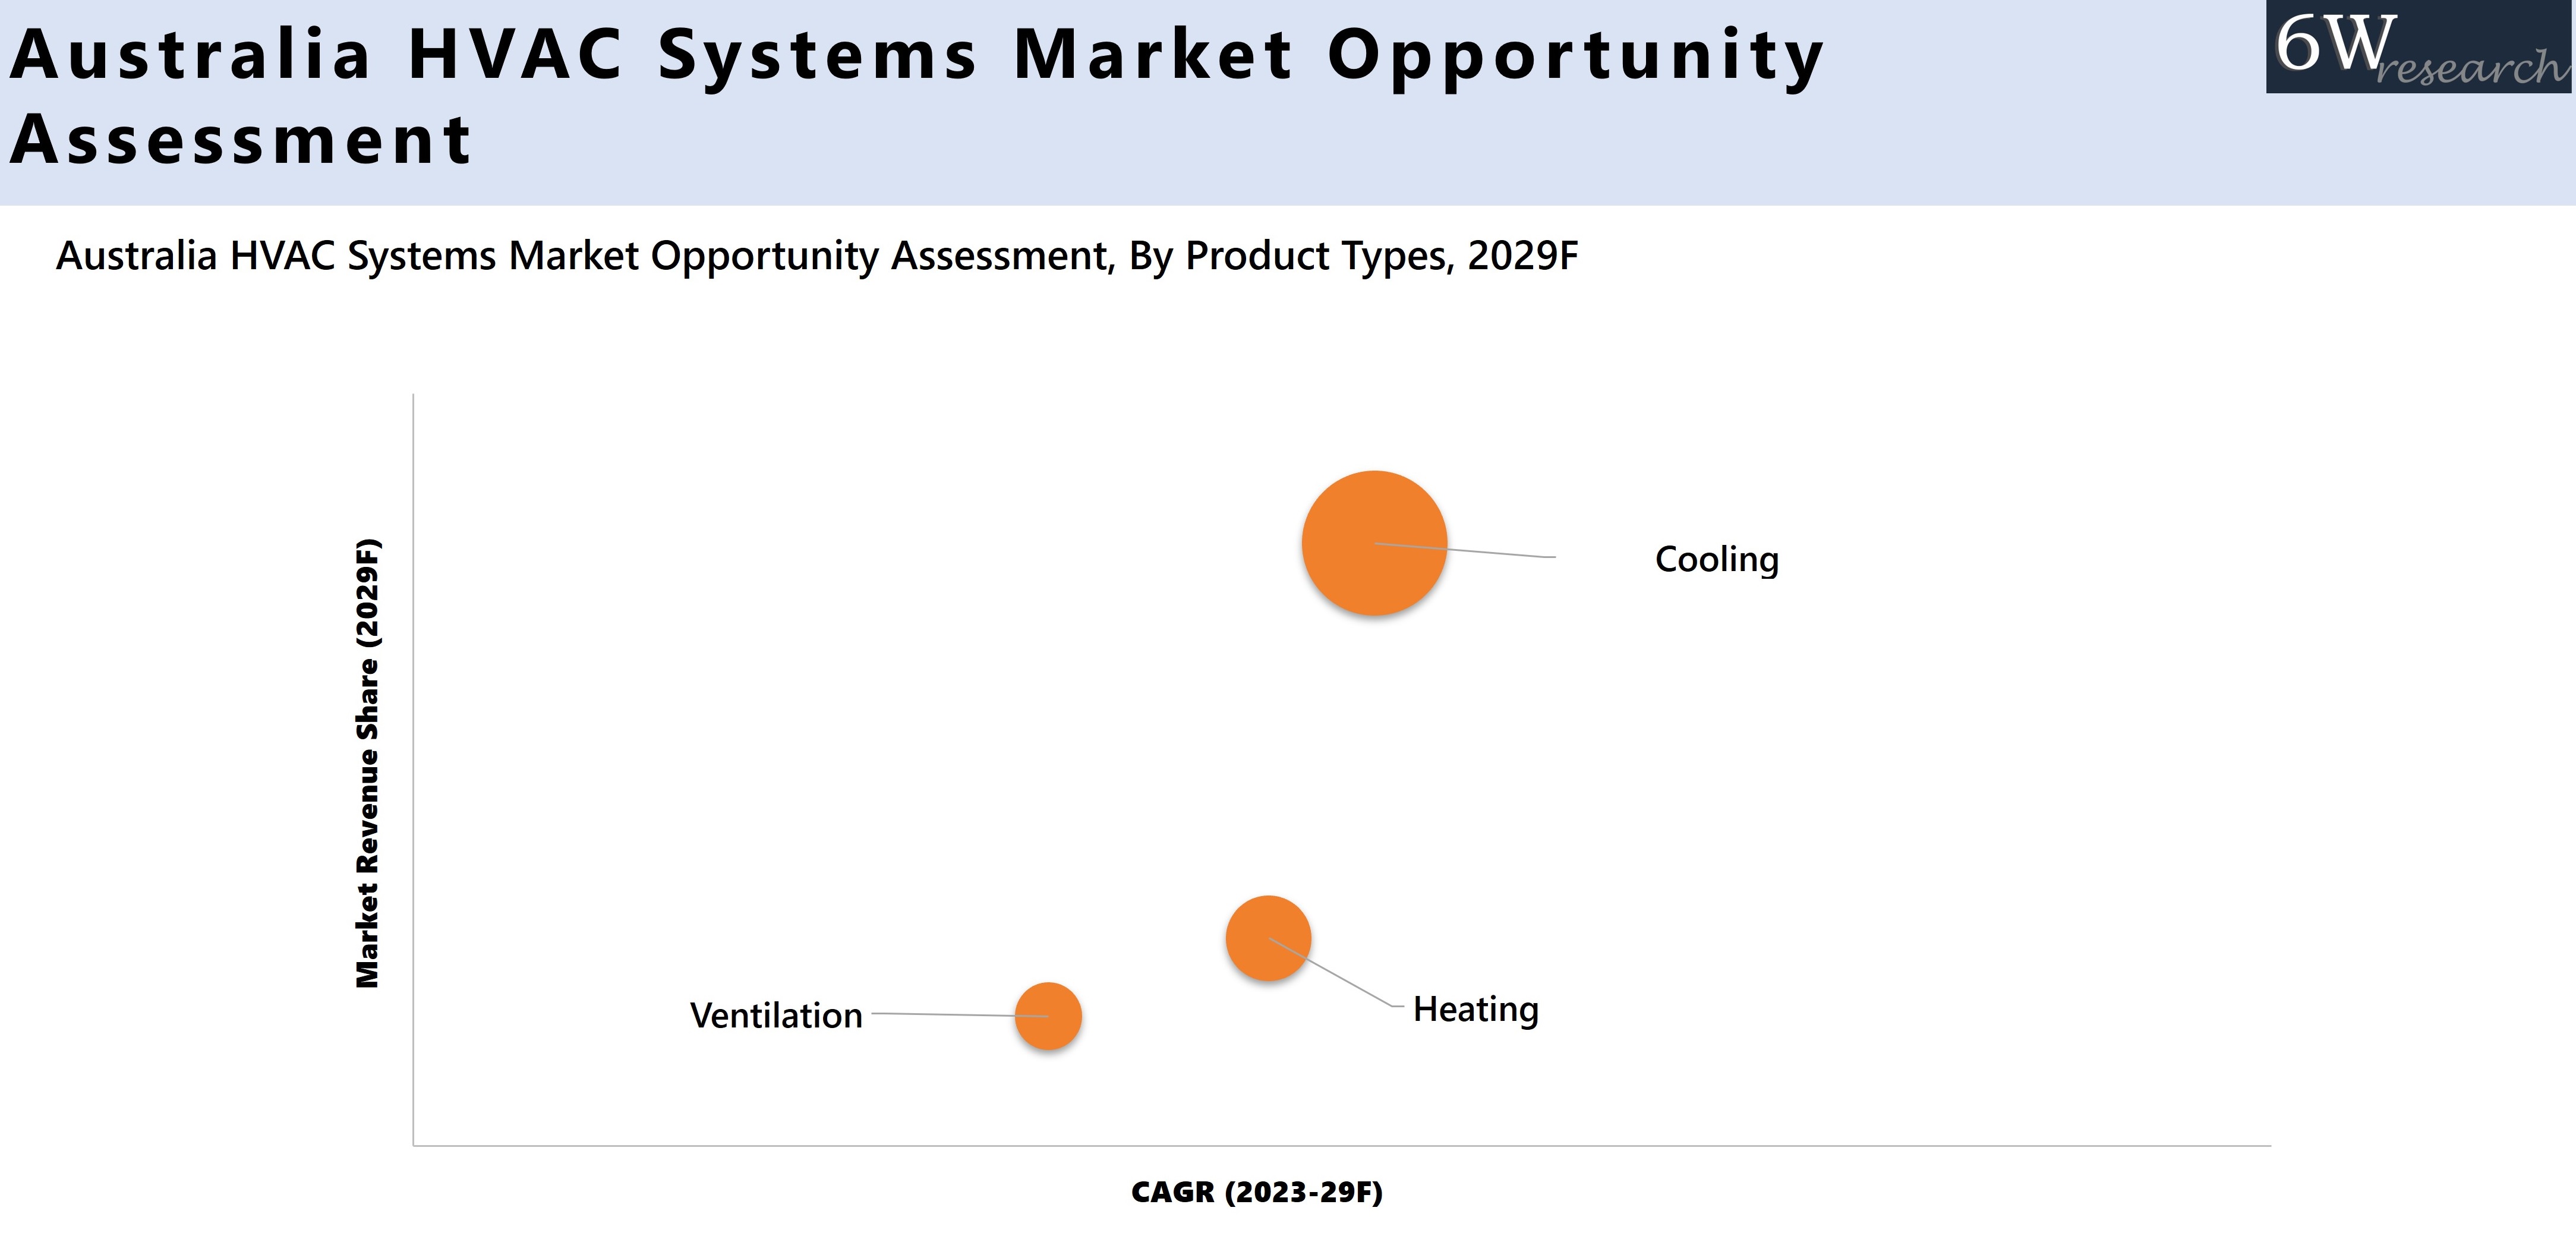 Australia HVAC Systems Market Opportunity Assessment